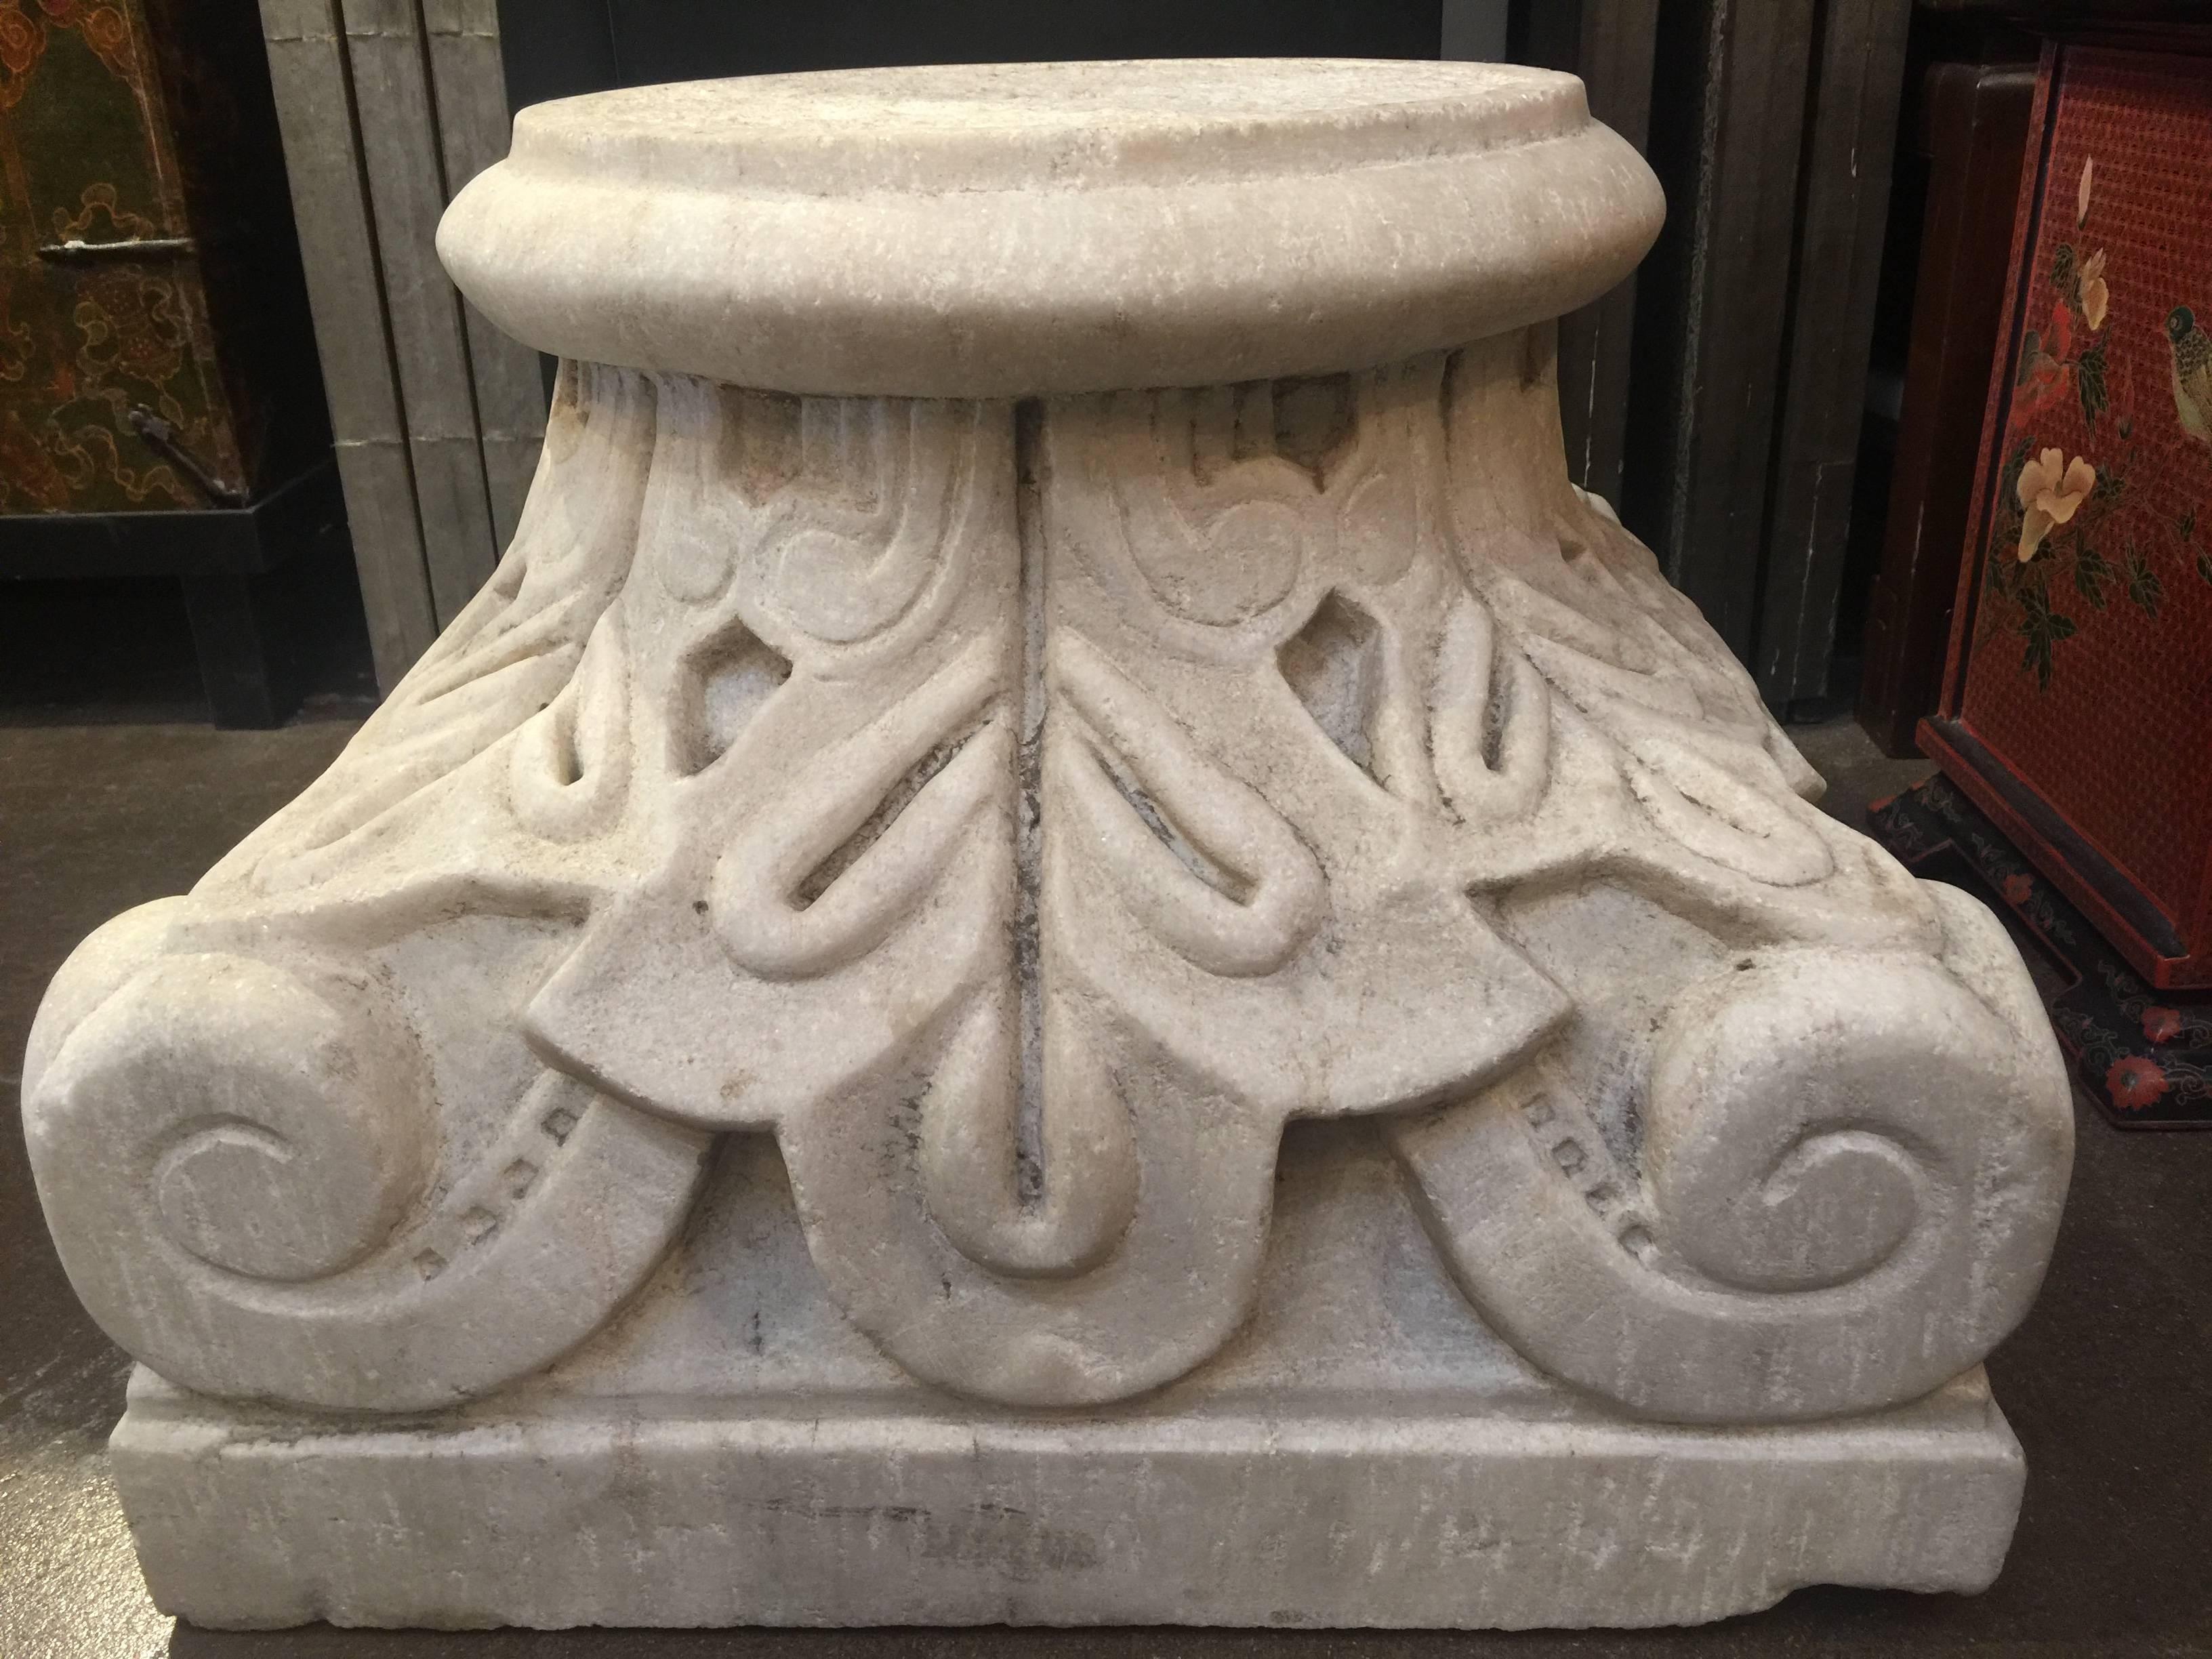 Chapiteau de colonne corinthienne en marbre, majestueux et bien sculpté, 19e siècle, Italie.
Présenté et exposé à l'envers, avec un motif décoratif typique d'acanthe et de volute.
Parfait pour la base d'une table d'appoint ou comme ornement de